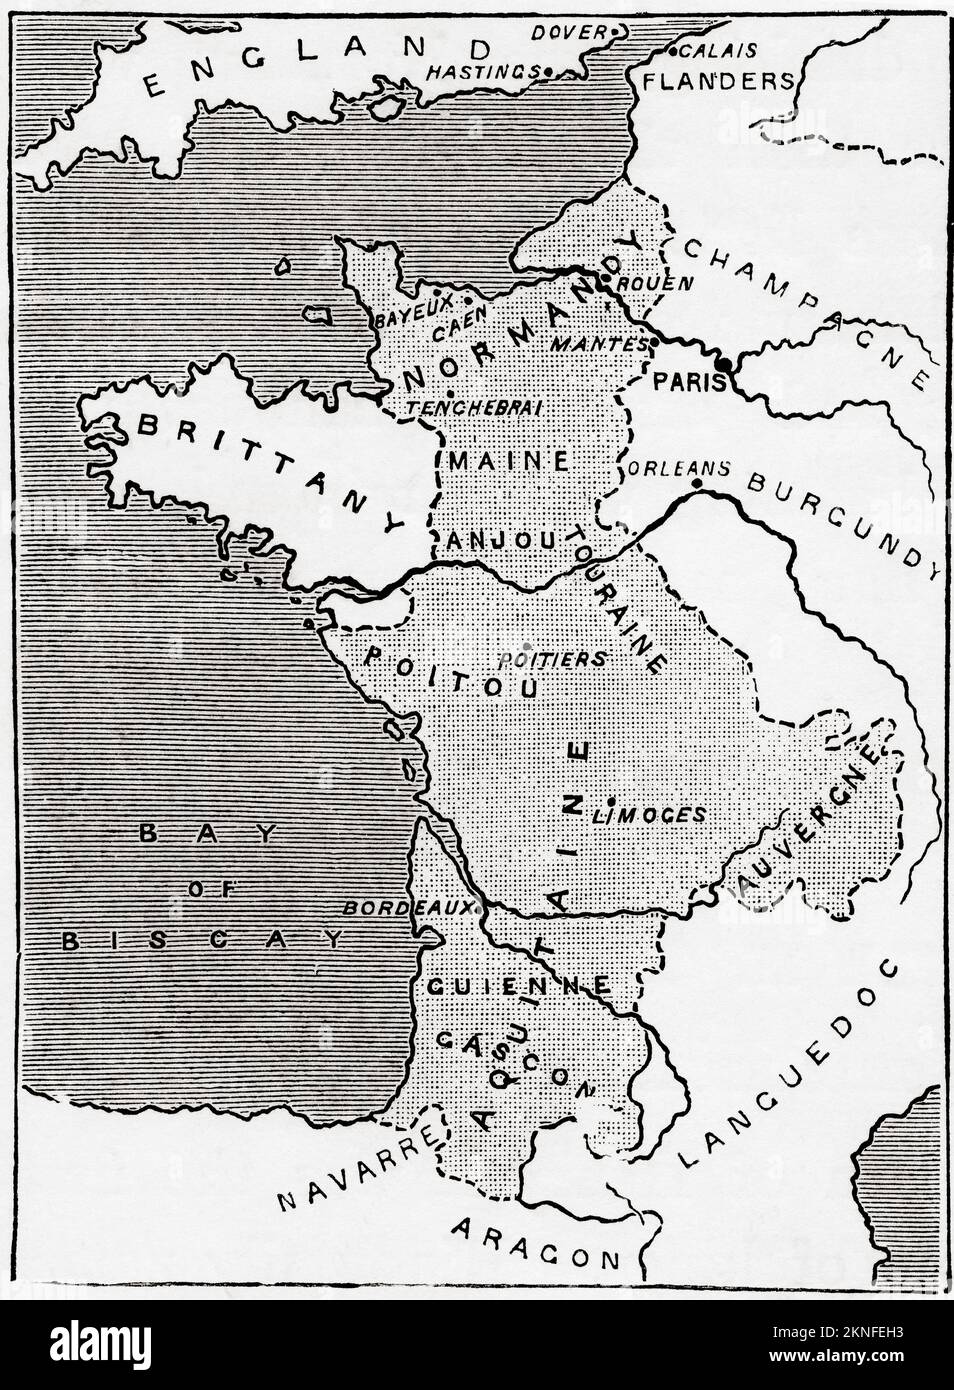 Mapa que muestra las posesiones en Francia en la época de Enrique II, mostrado en la porción teñida. De Historia de Inglaterra, publicado en 1907 Foto de stock